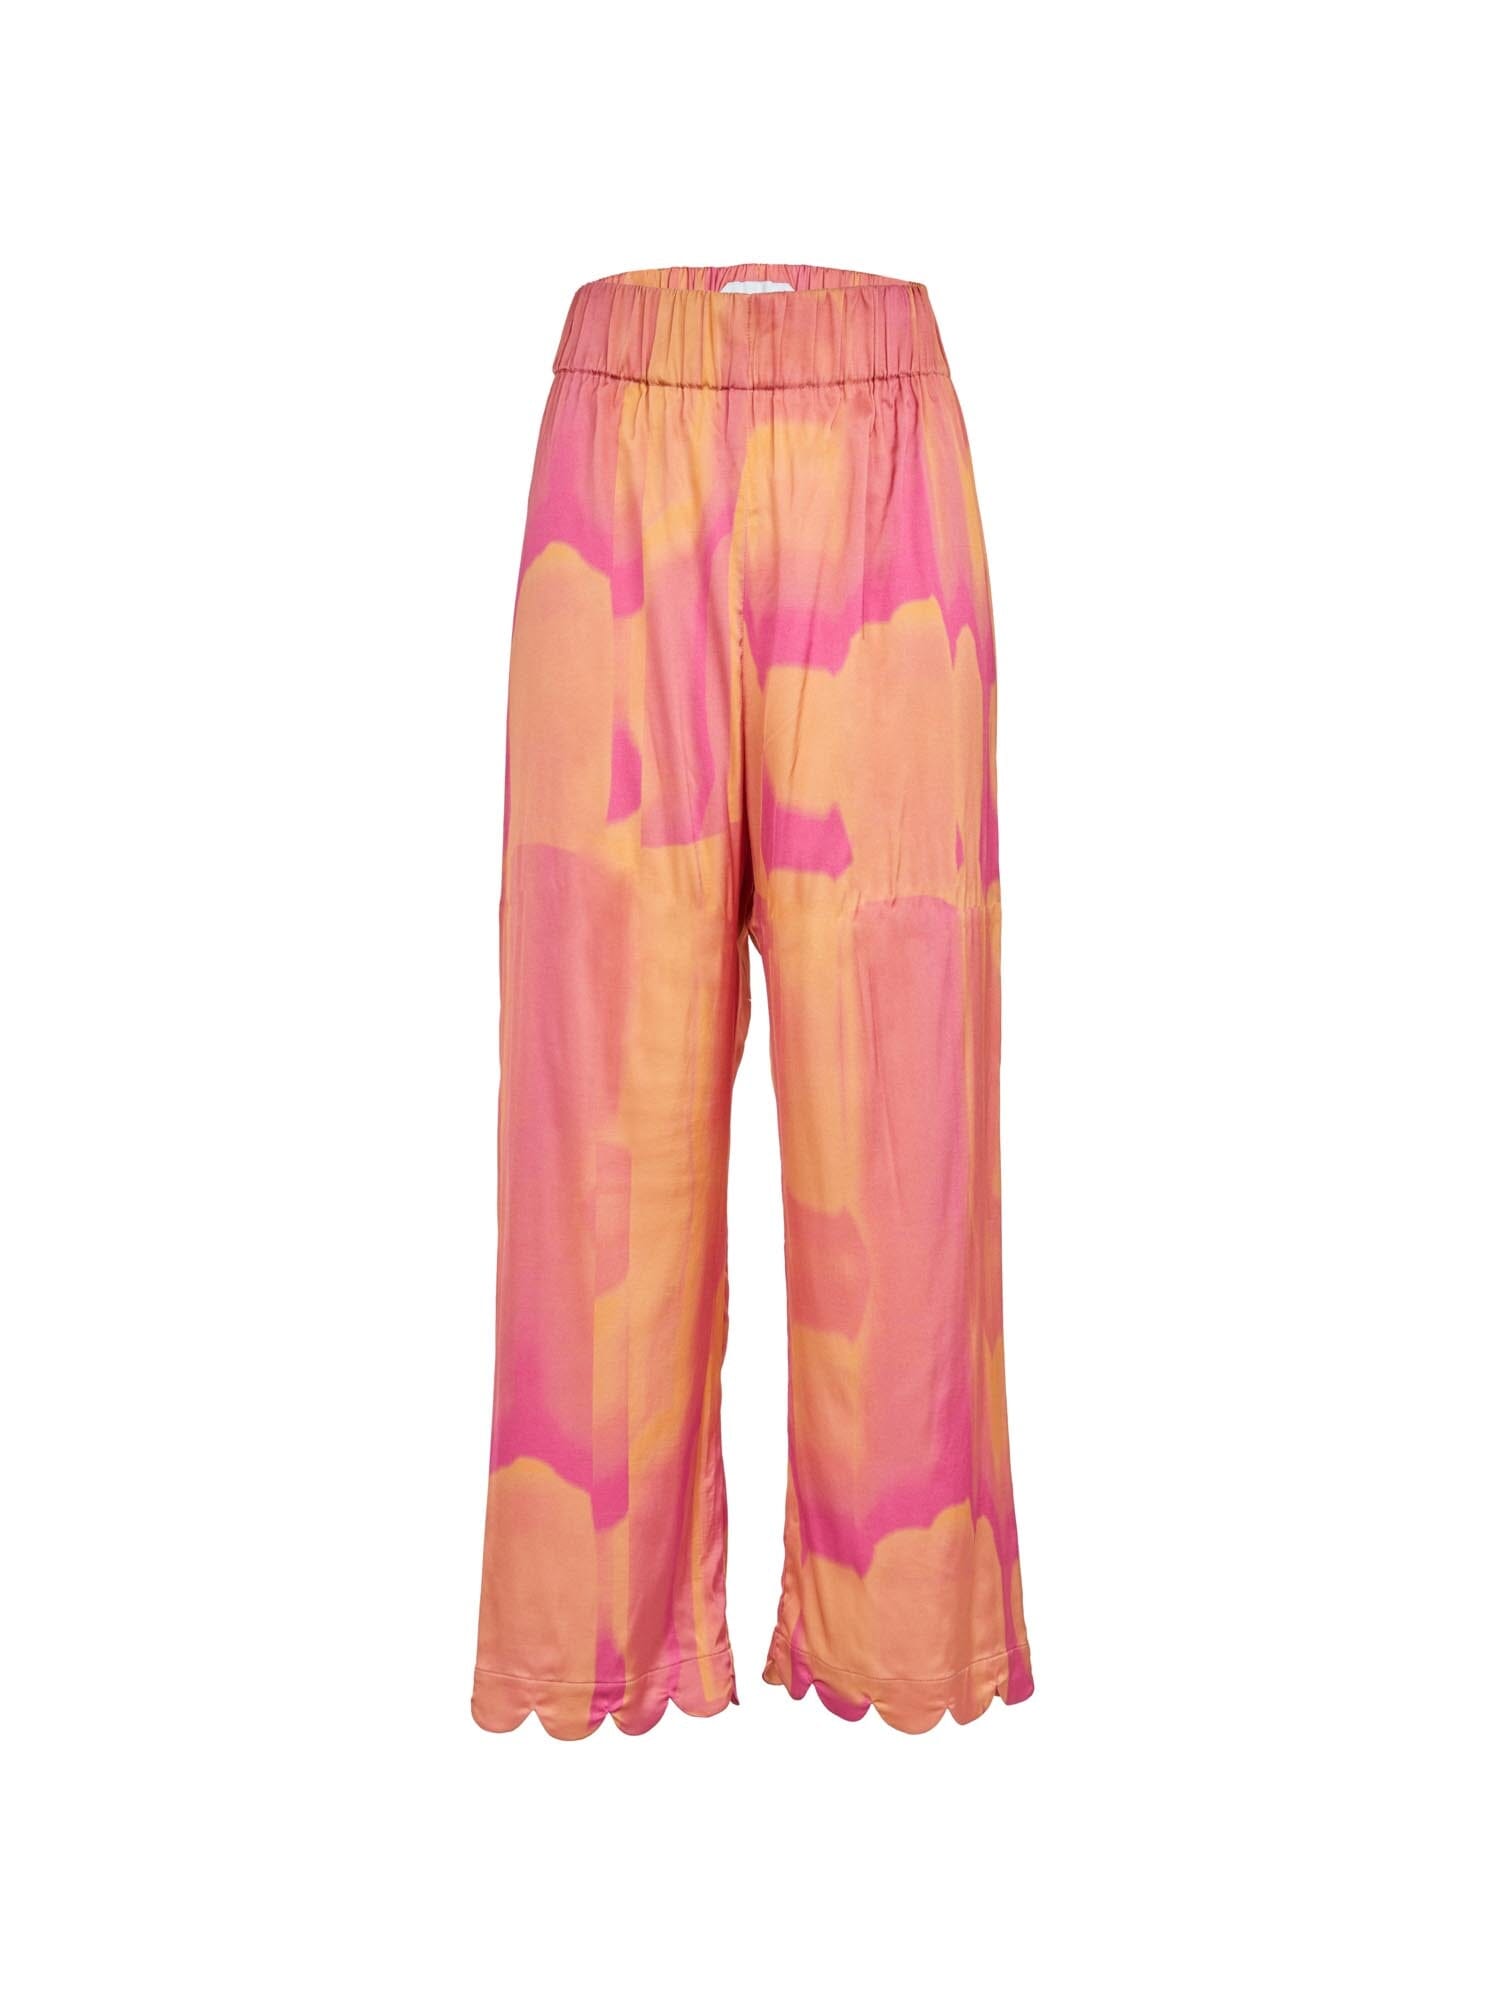 SIFNOS - Pantalon ample taille haute élastiquée bas finition pétales en satin de viscose imprimé Tie & Dye Fuchsia Pantalon Fête Impériale